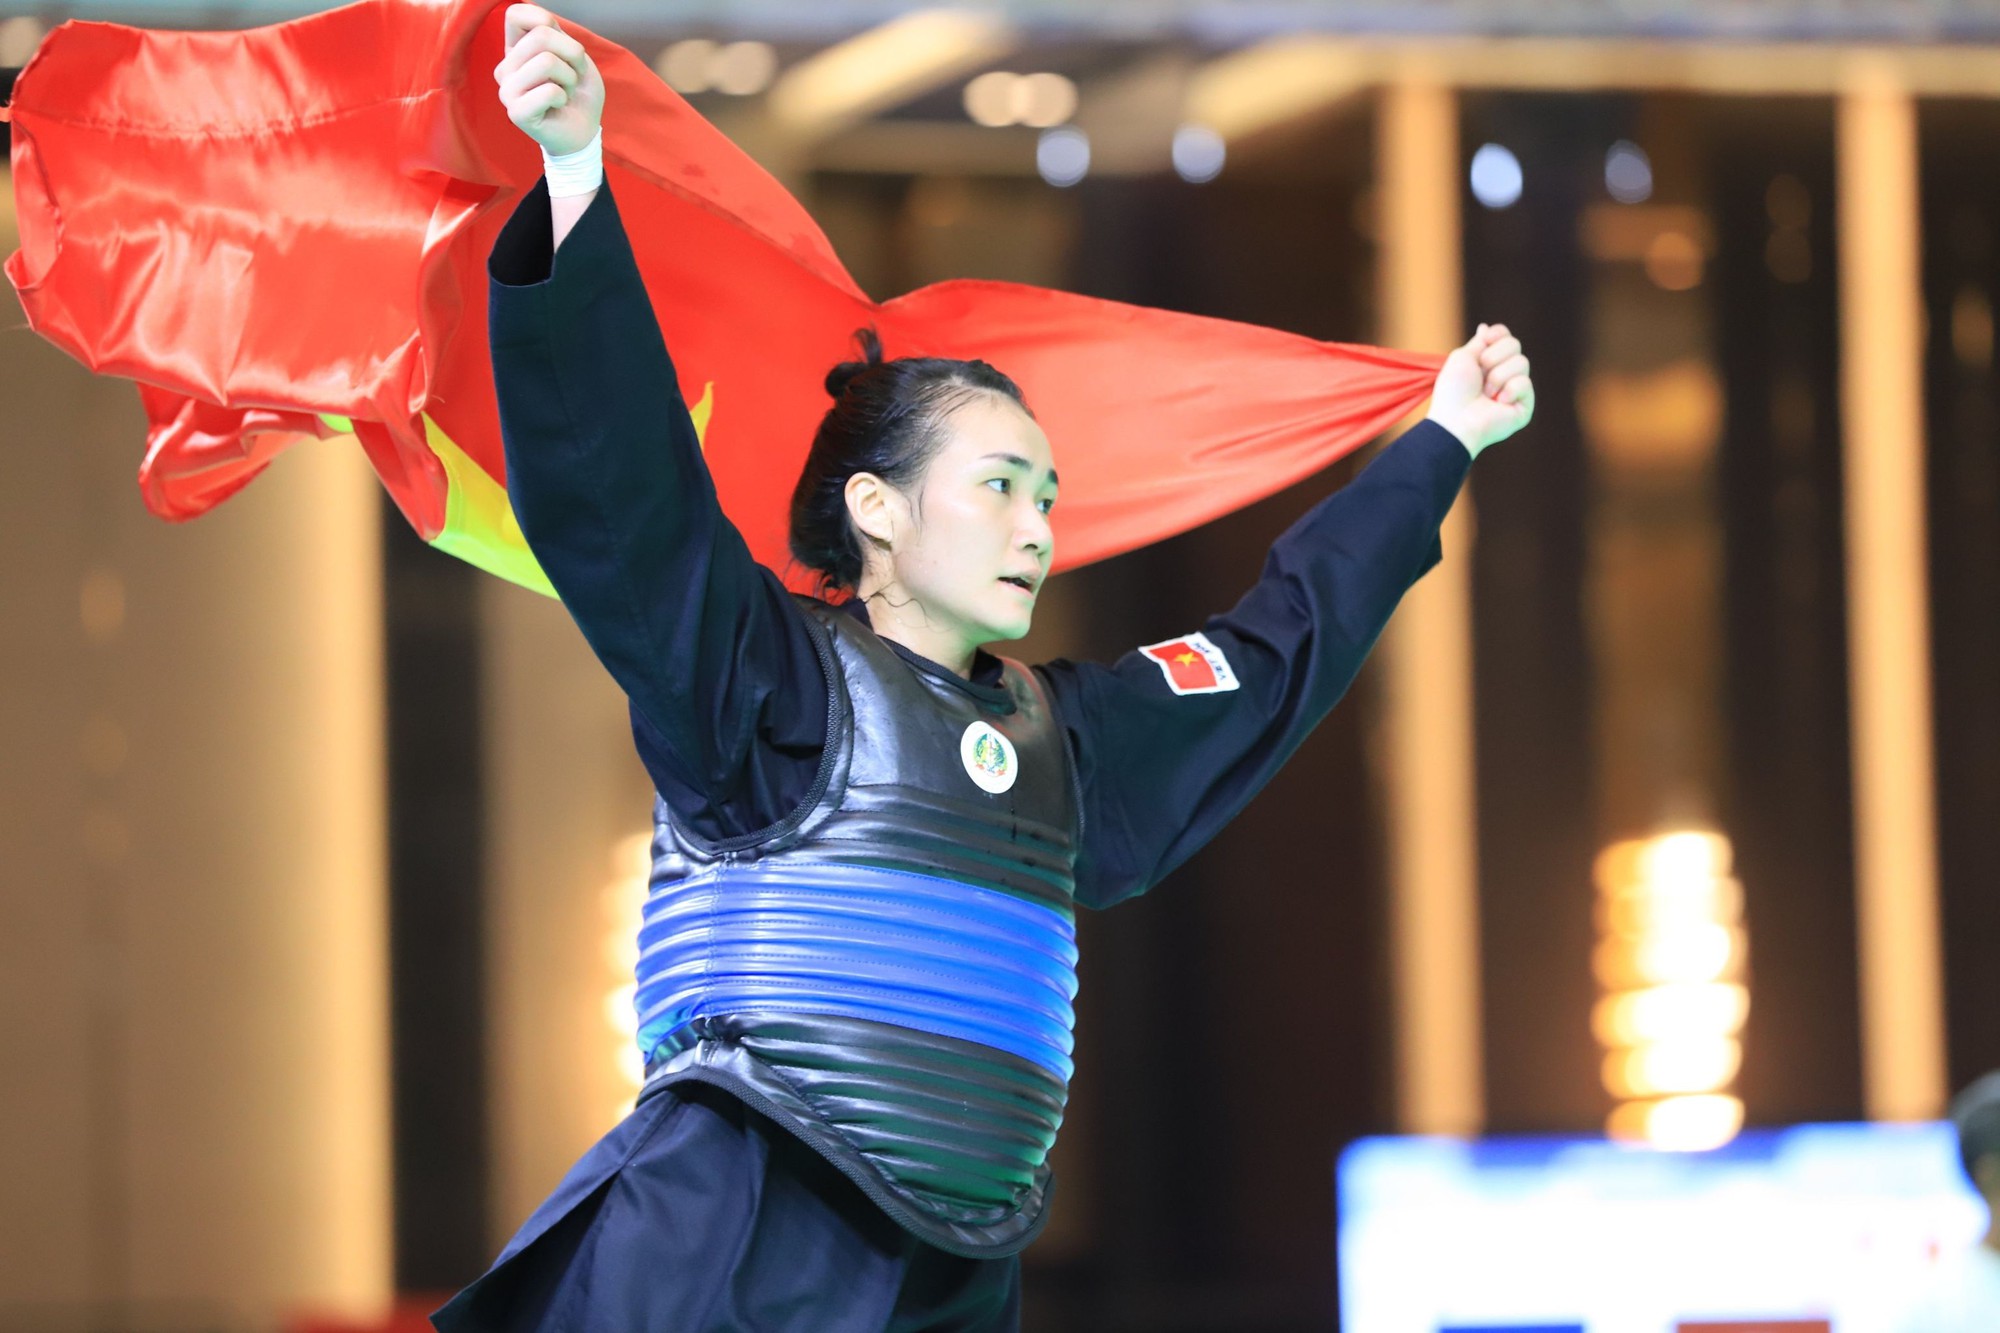 Đang bị dẫn điểm, võ sĩ Nguyễn Hoàng Hồng Ân bất ngờ được xử thắng, đoạt HCV - Ảnh 1.